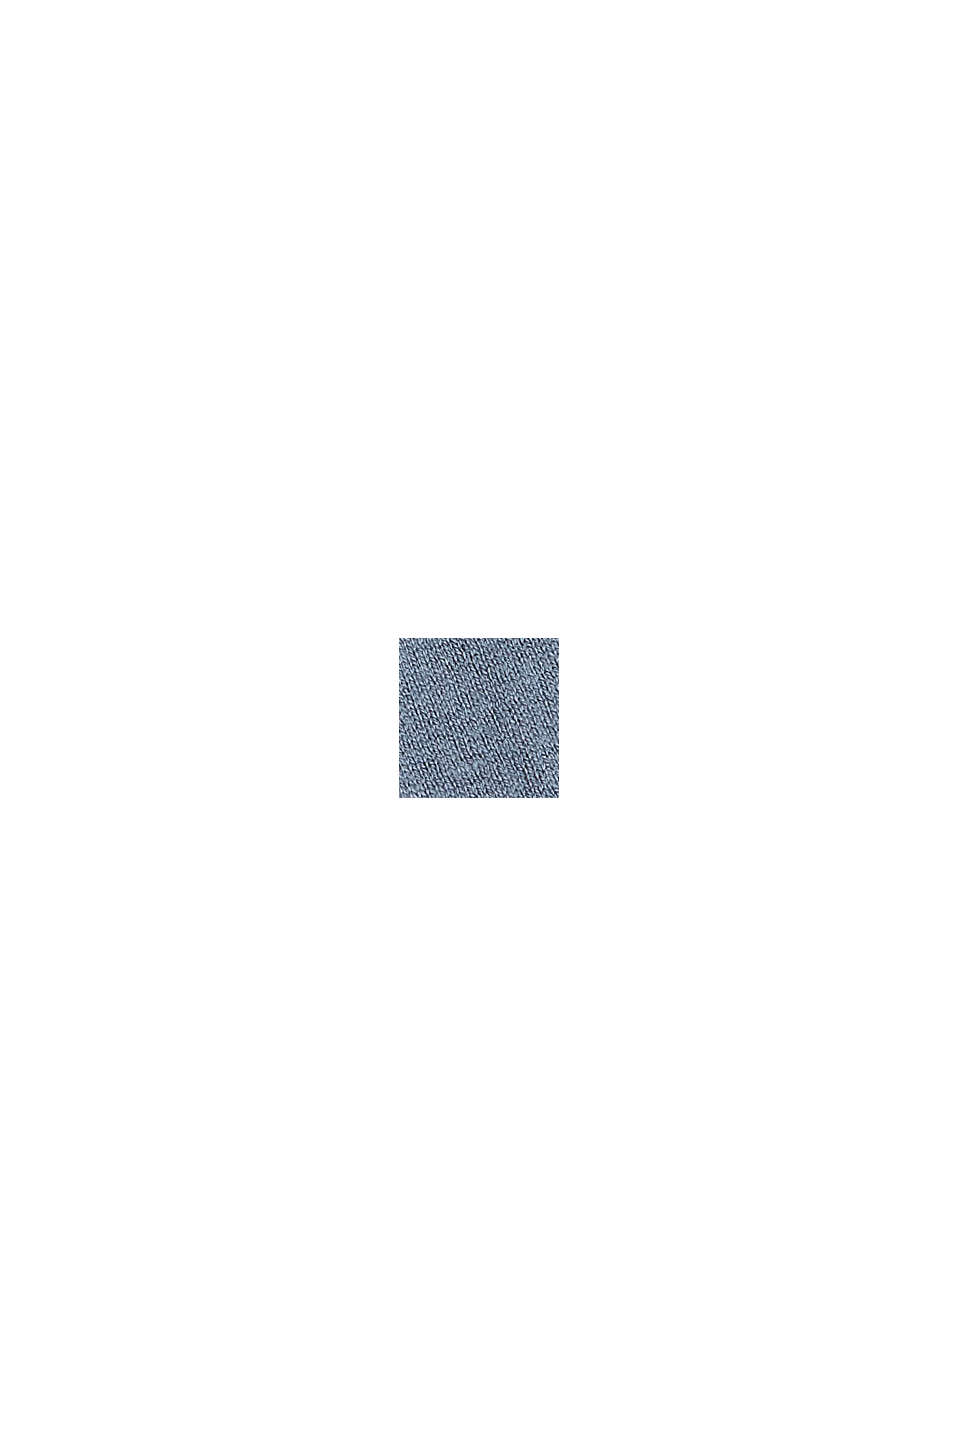 Cardigan en fine maille de coton biologique mélangé, GREY BLUE, swatch